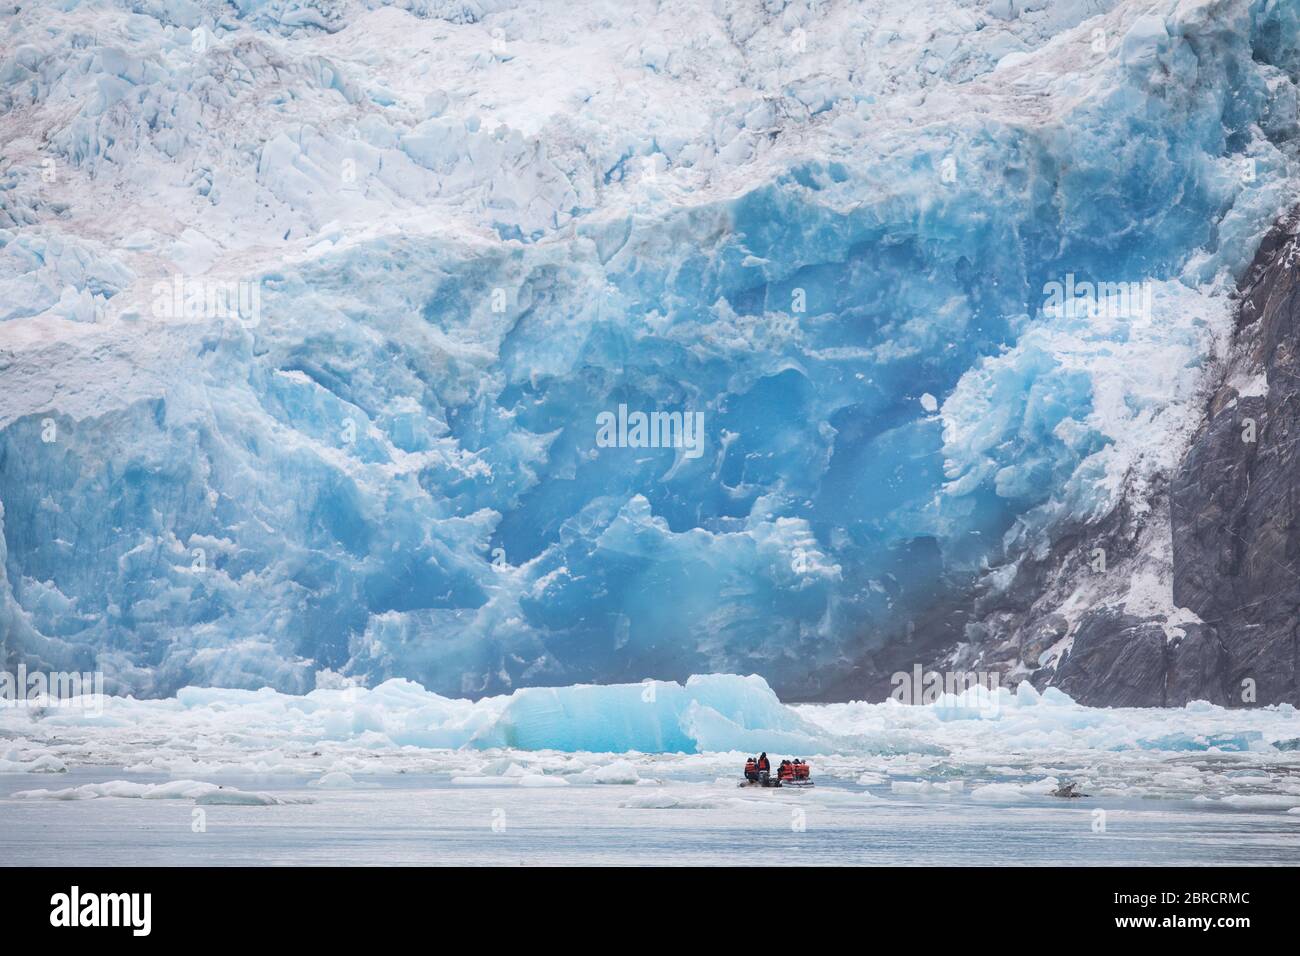 I turisti su una barca da sci possono ammirare da vicino la vista panoramica degli iceberg calved dal ghiacciaio South Sawyer, che galleggia lungo il fiordo Tracy Arm, nell'Alaska sudorientale, USA Foto Stock